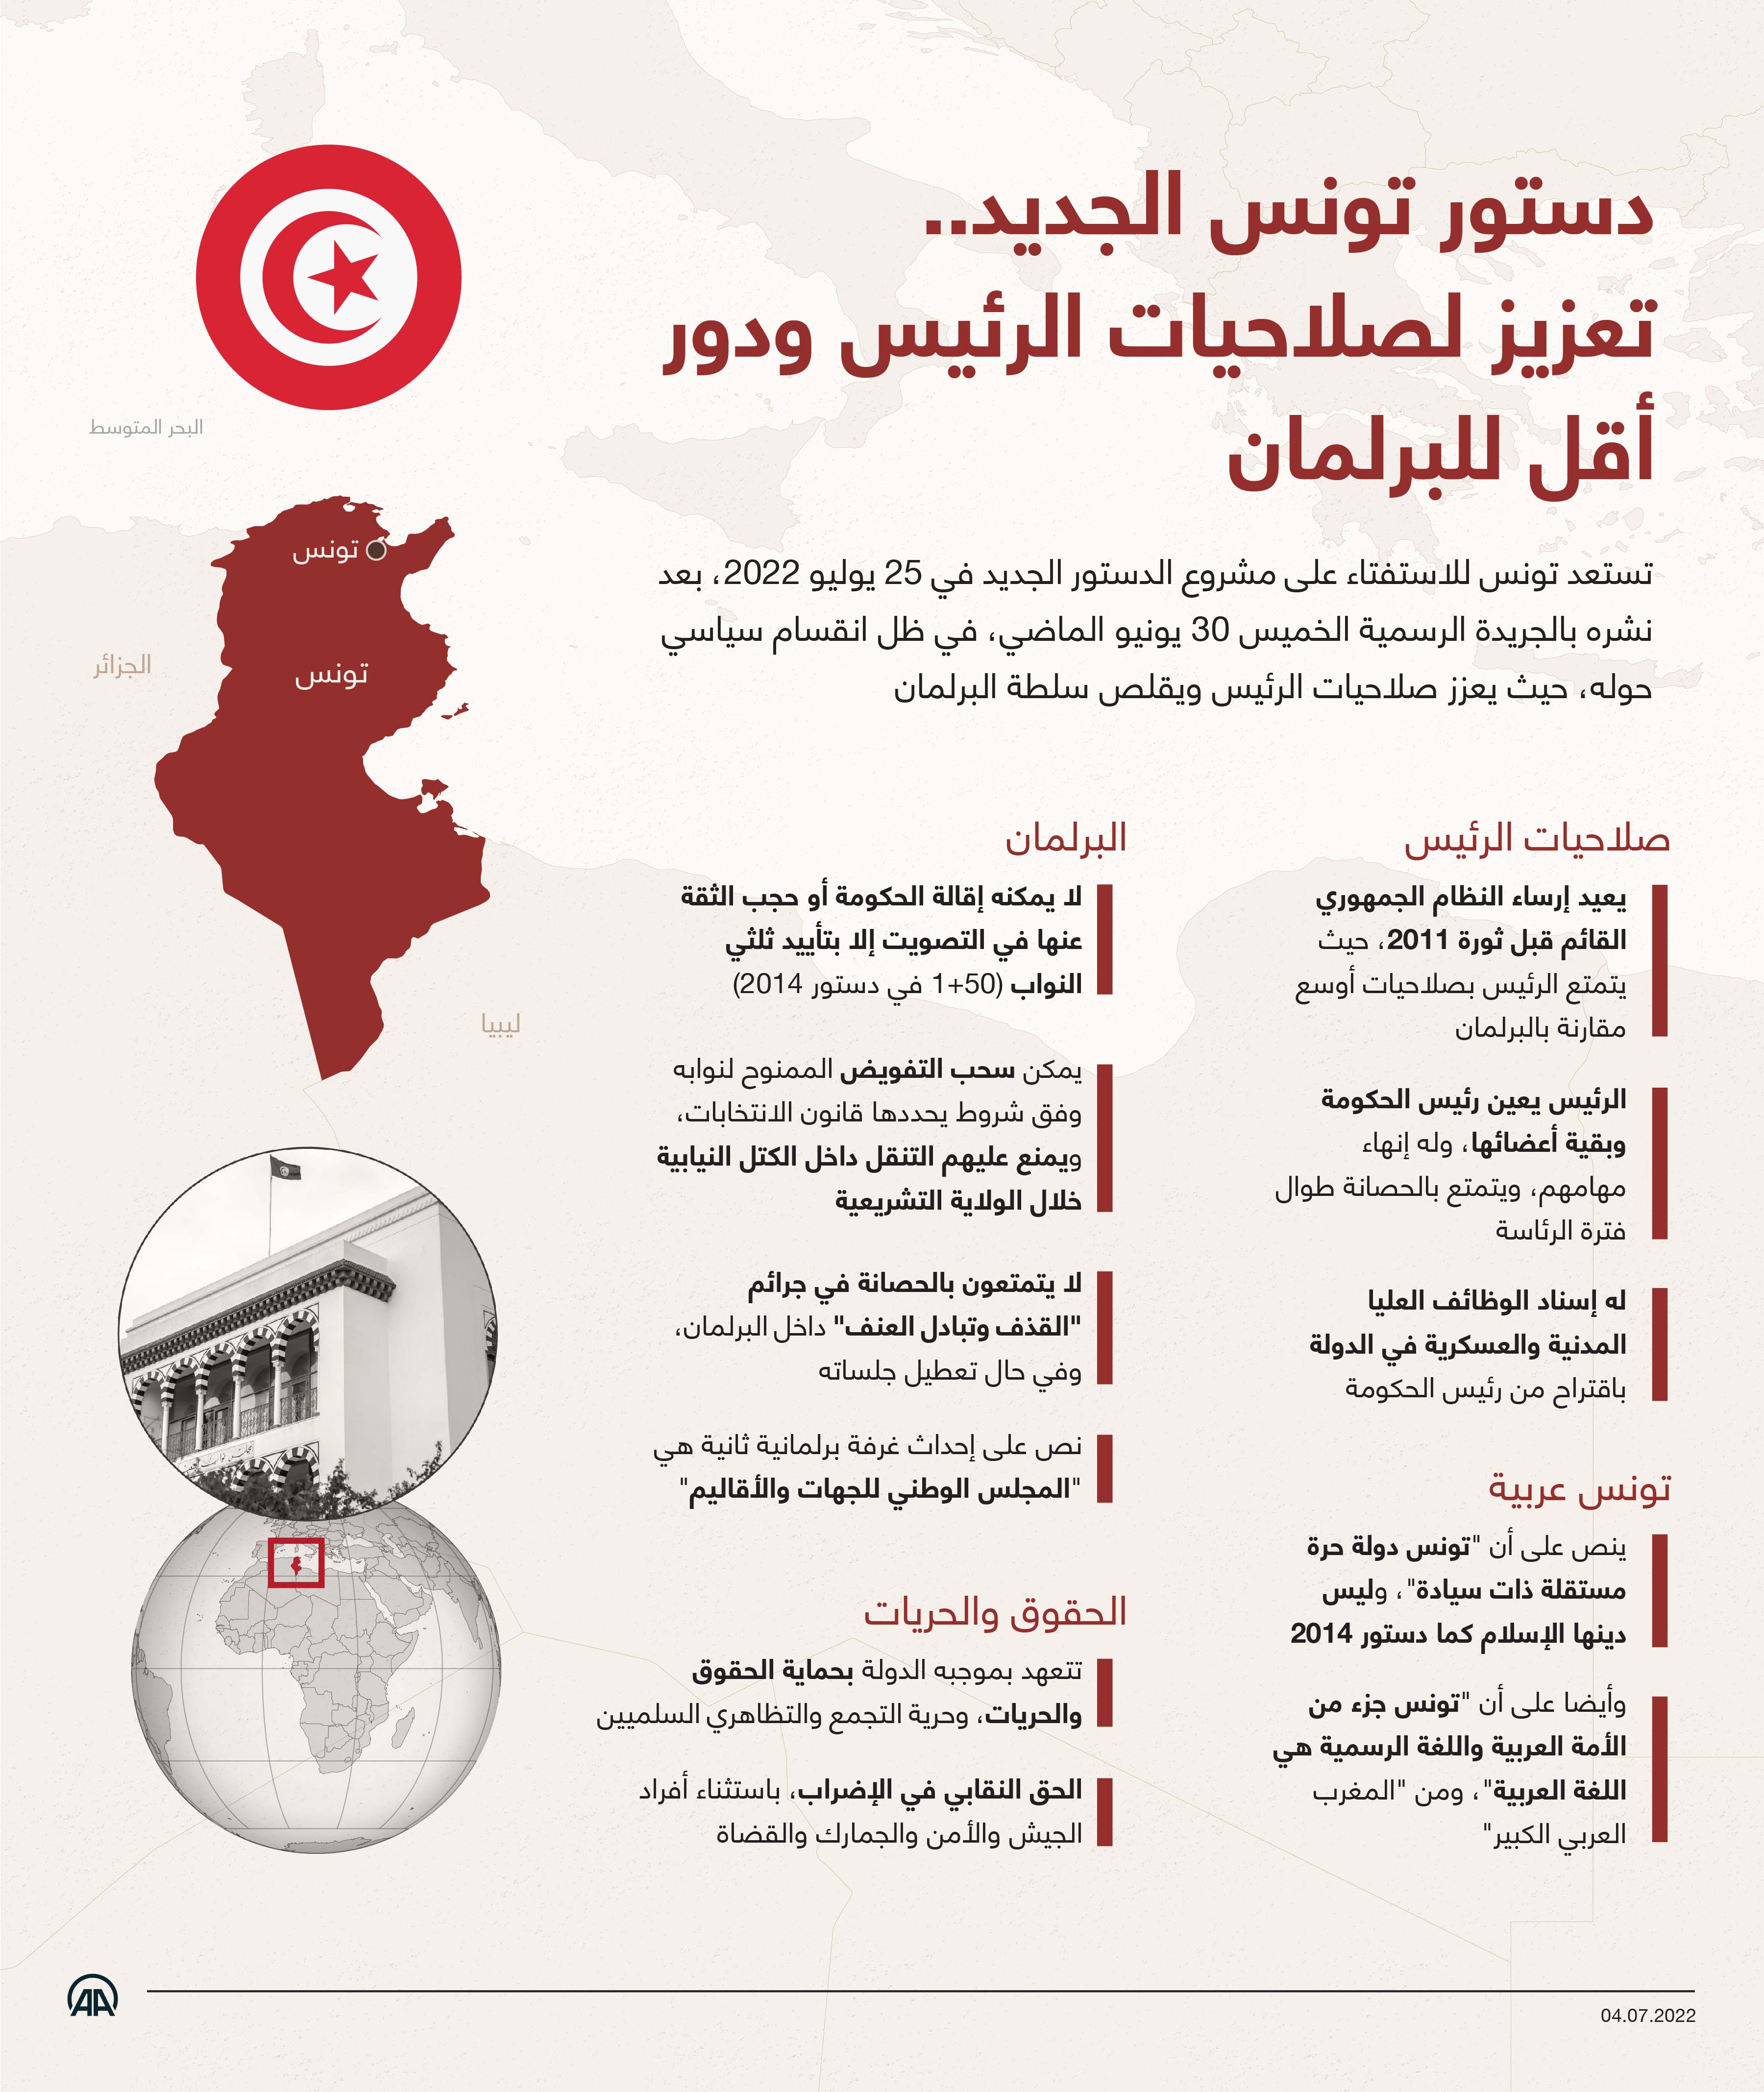 دستور تونس الجديد.. تعزيز لصلاحيات الرئيس ودور أقل للبرلمان